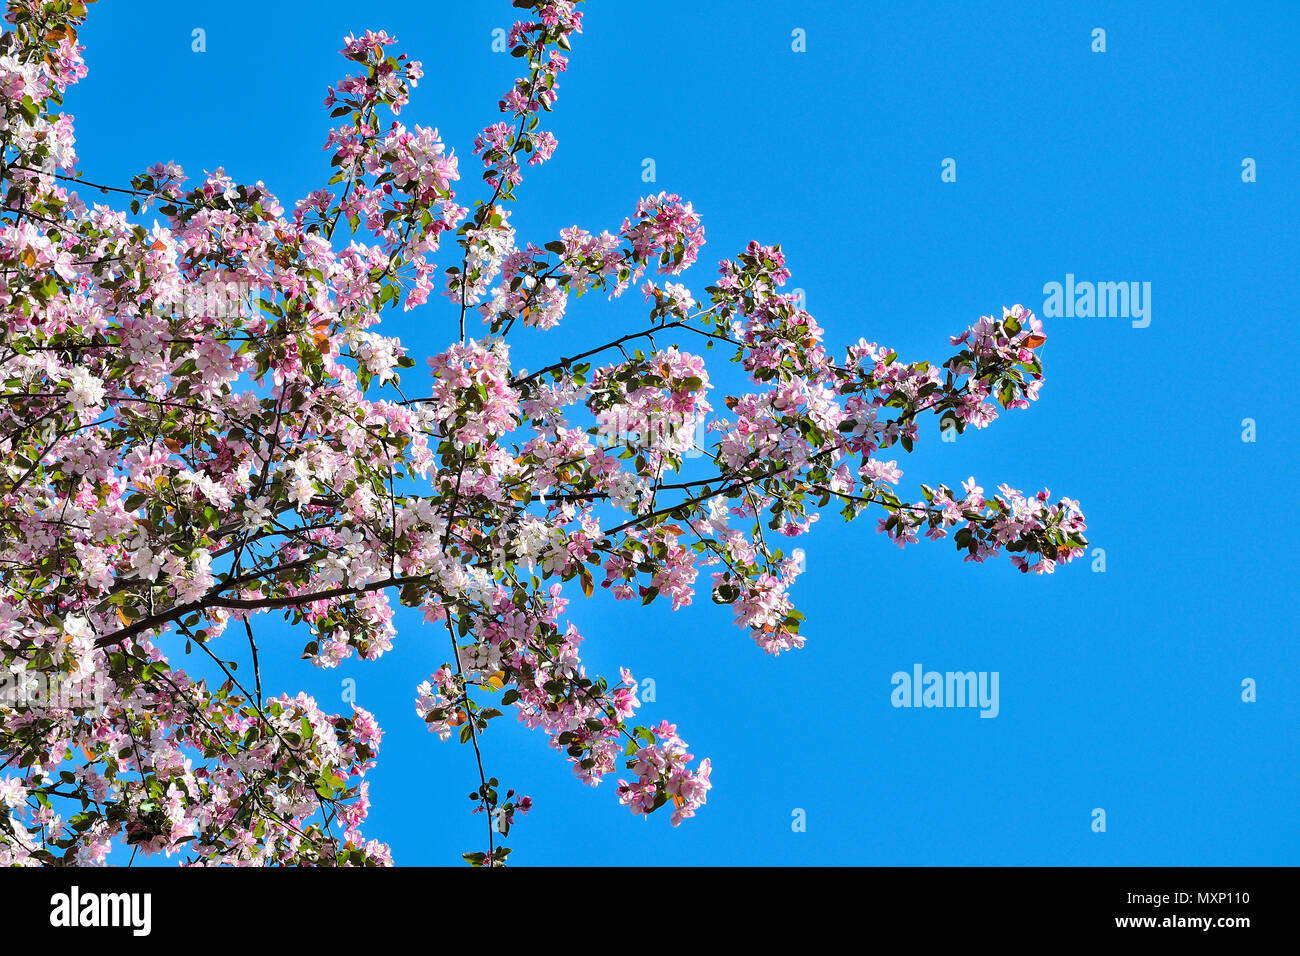 Frühjahr blühenden Apfelbaum Äste mit sanftem Rosa duftende Blüten und junge grüne Blätter auf einen strahlend blauen Himmel an einem sonnigen Tag Stockfoto